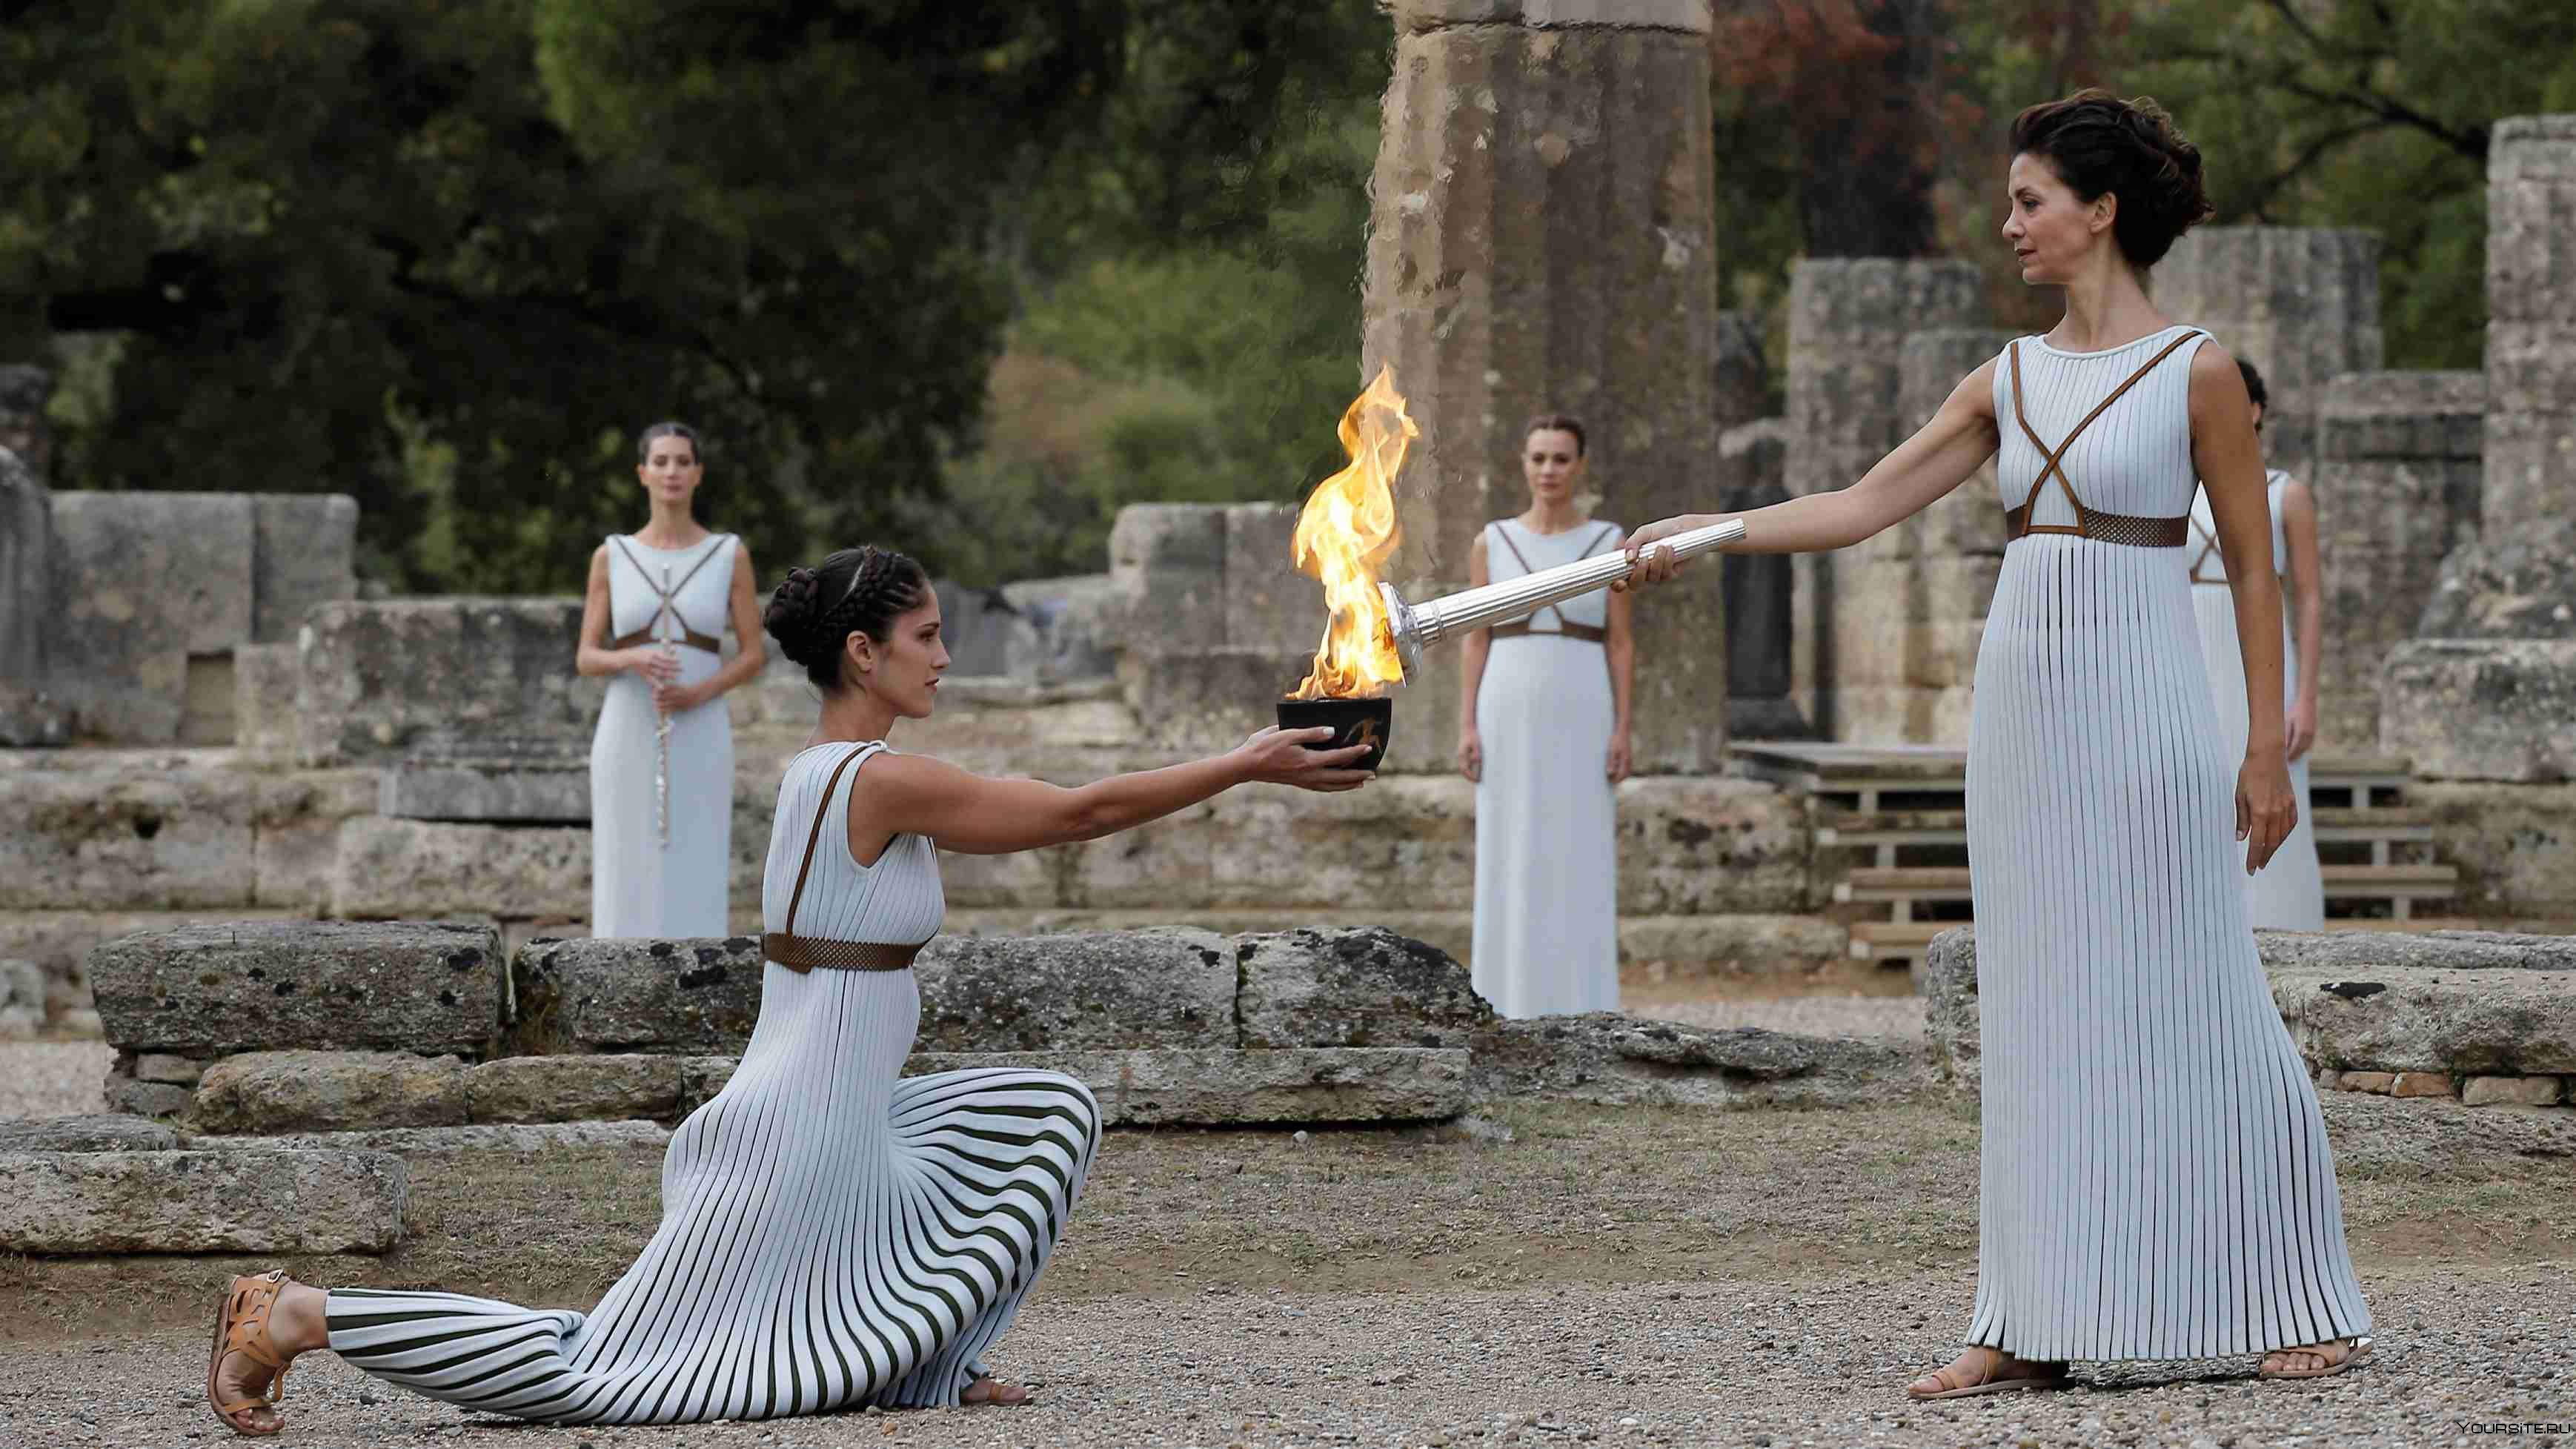 Олимпийский огонь современных игр зажигается. Зажжение олимпийского огня в Греции. Зажжение олимпийского огня в древней Греции. Древняя Греция Олимпийский огонь в древности.